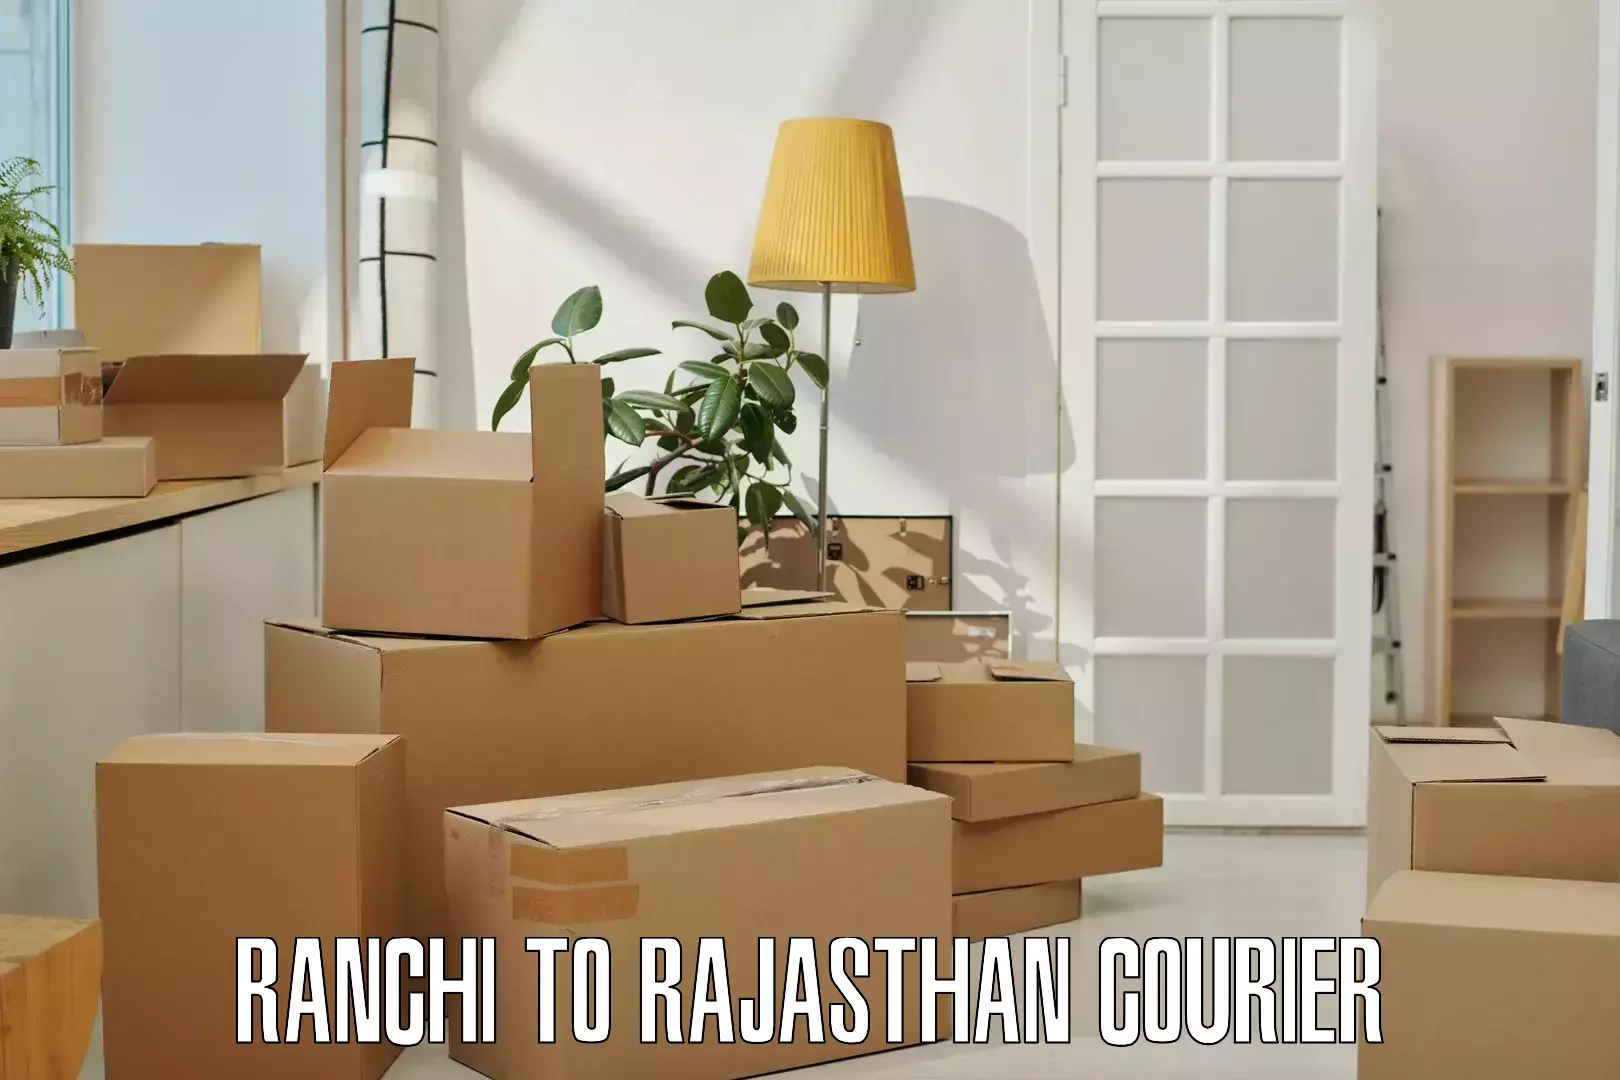 Easy return solutions Ranchi to Bijainagar